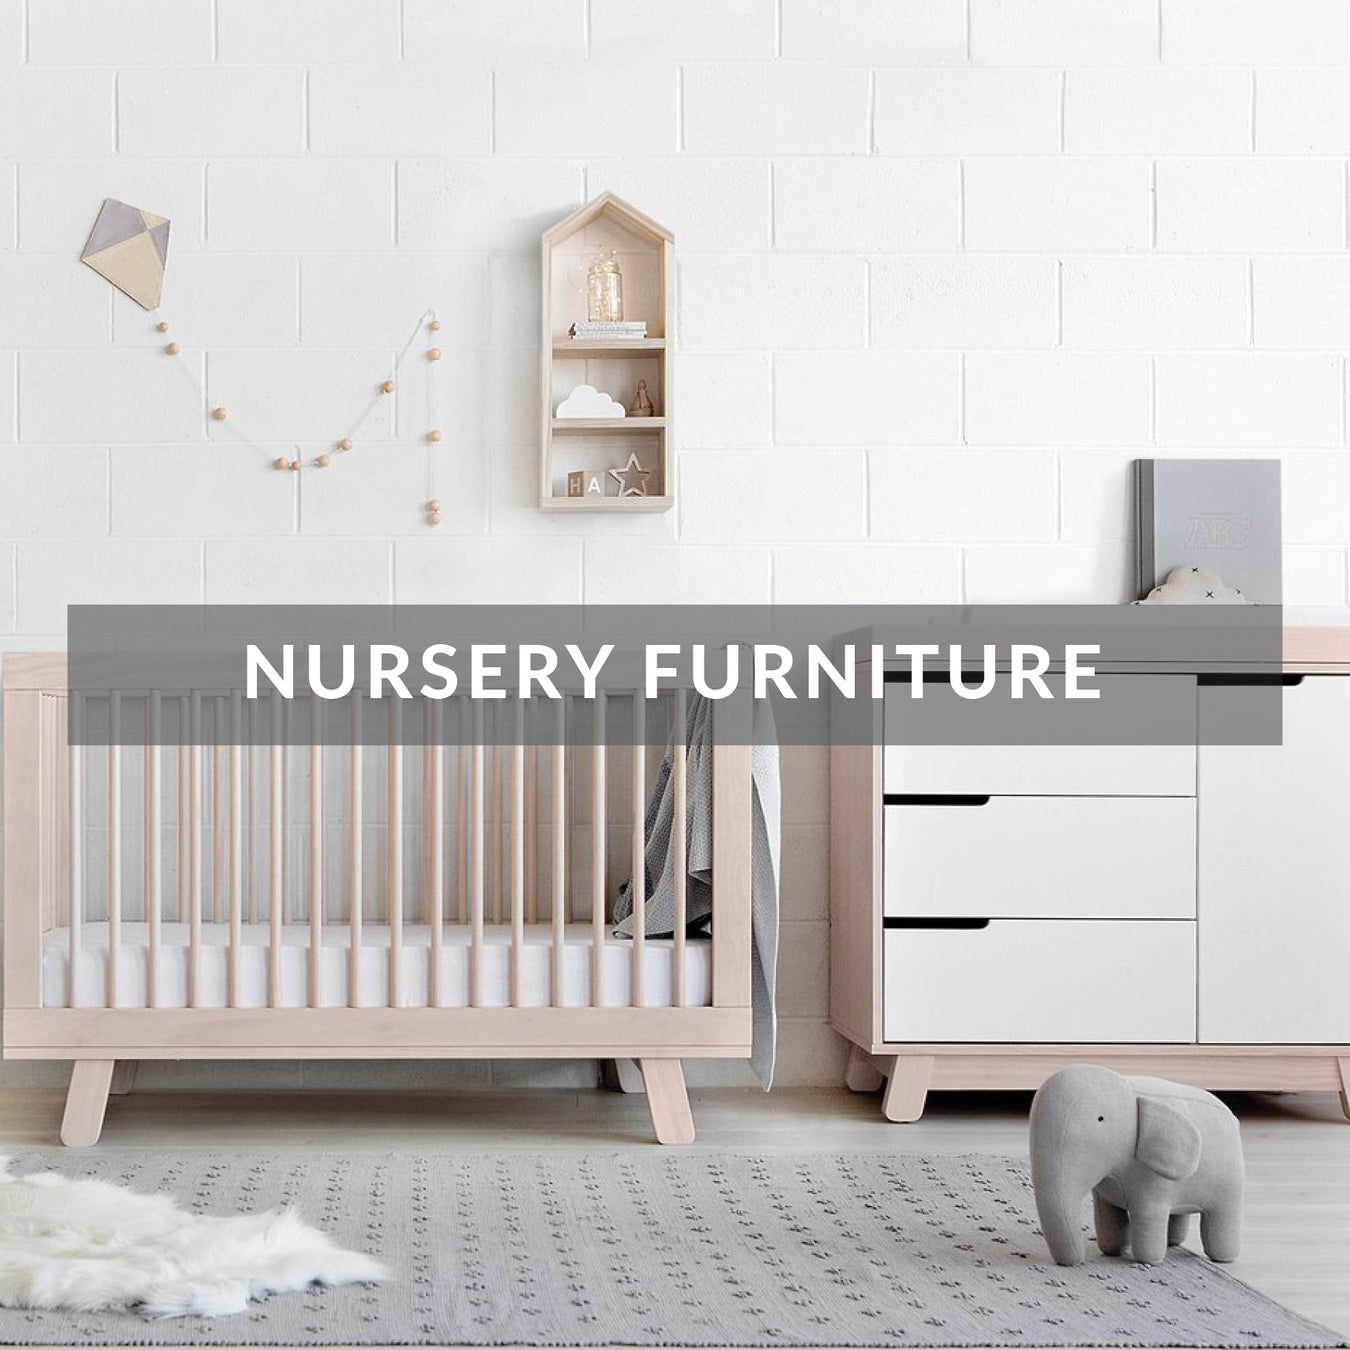 Nursery Furniture